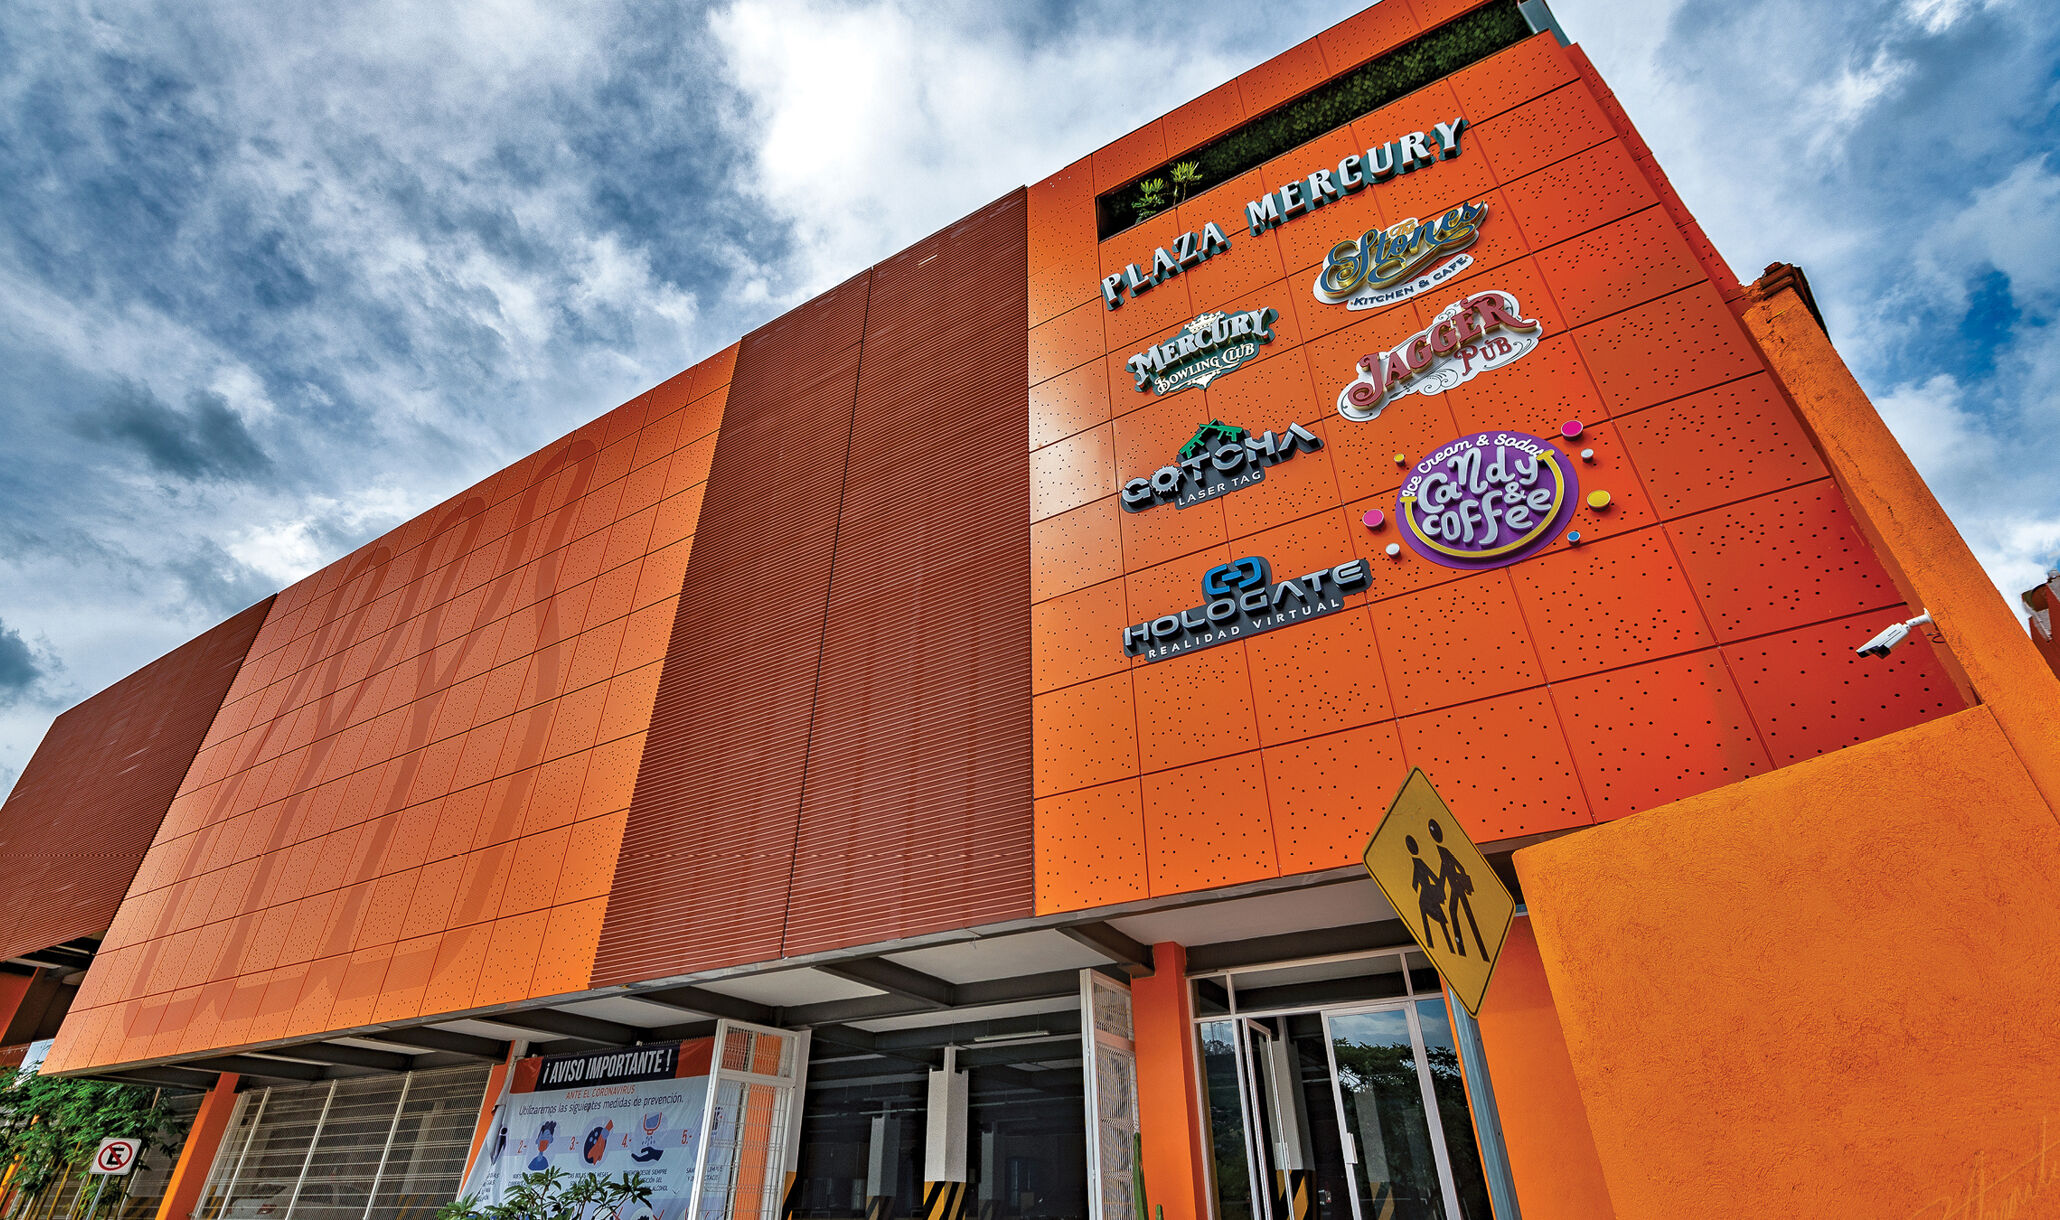 Mercury Bowling Center, Oxaca Mexico - Entrance-1